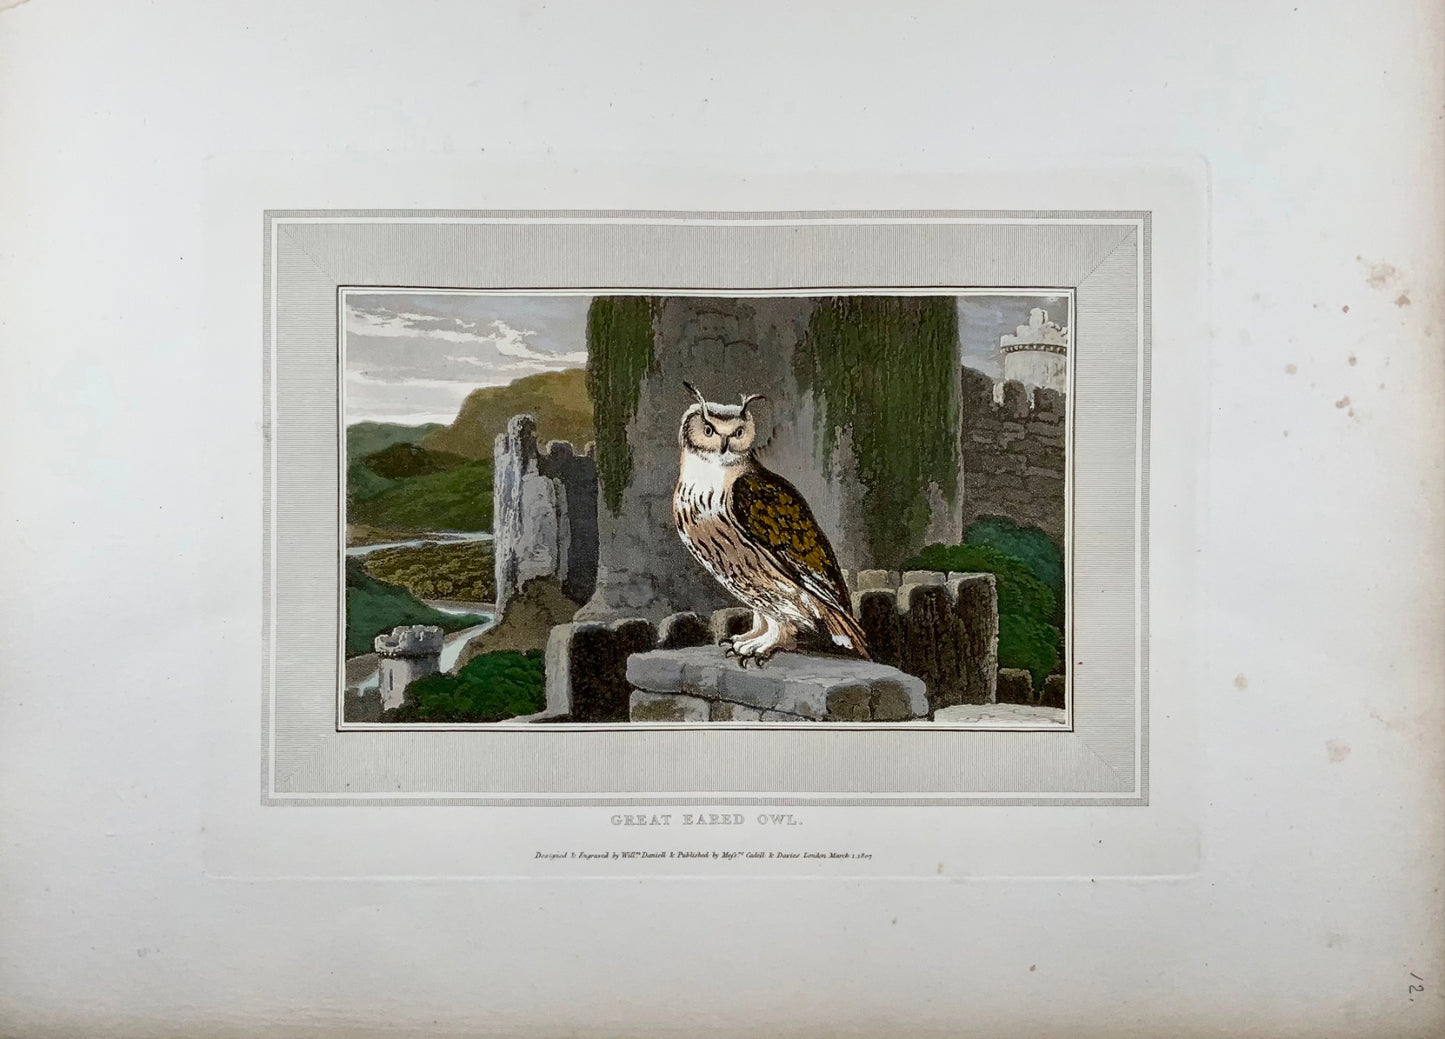 1807 William Daniell, Gufo dalle orecchie grandi, ornitologia, acquatinta colorata a mano